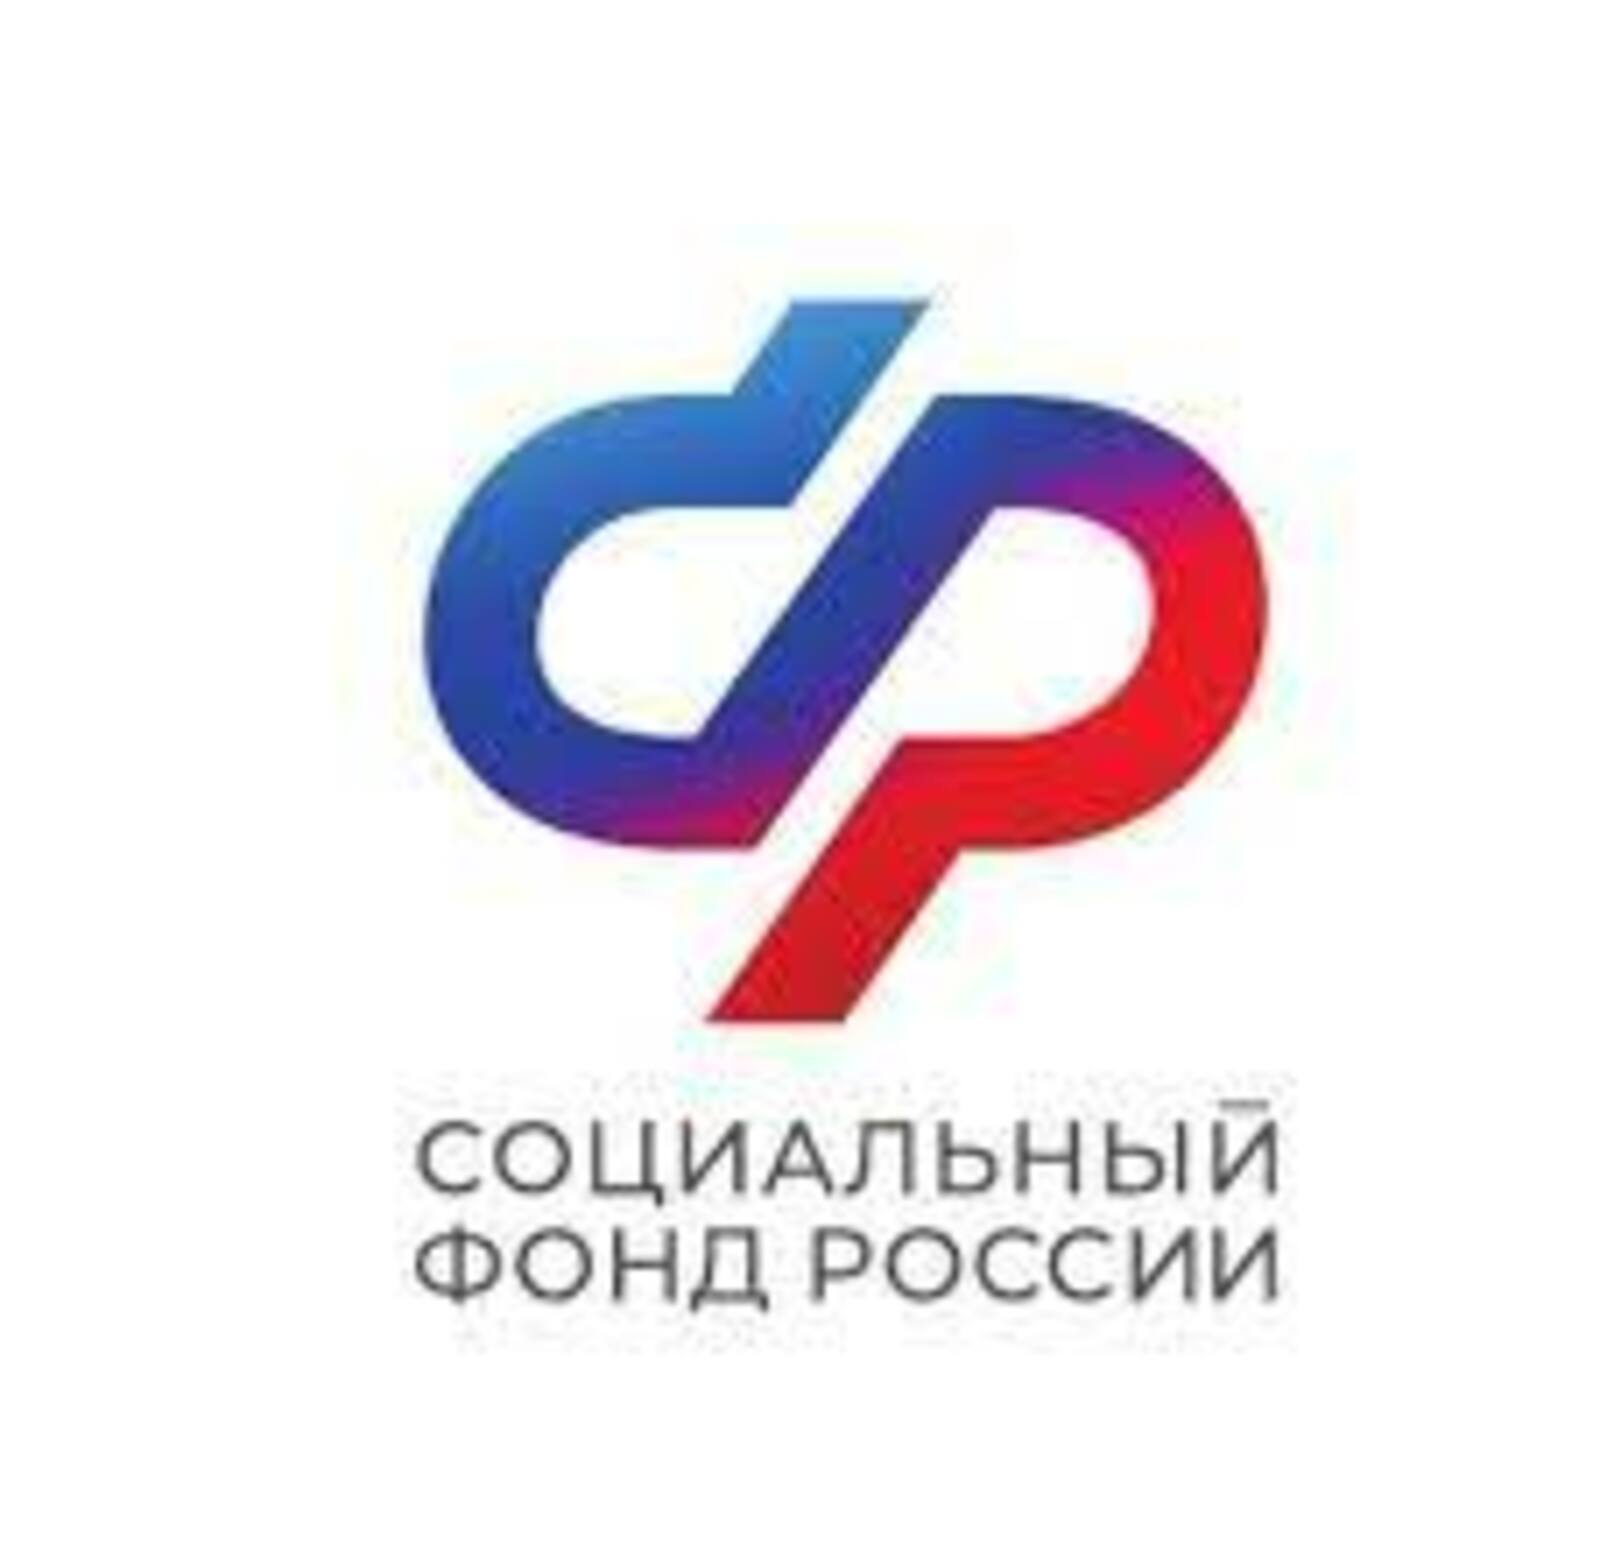 Отделение Социального фонда по Республике Башкортостан напоминает работодателям о необходимости подтверждения основного вида экономической деятельности